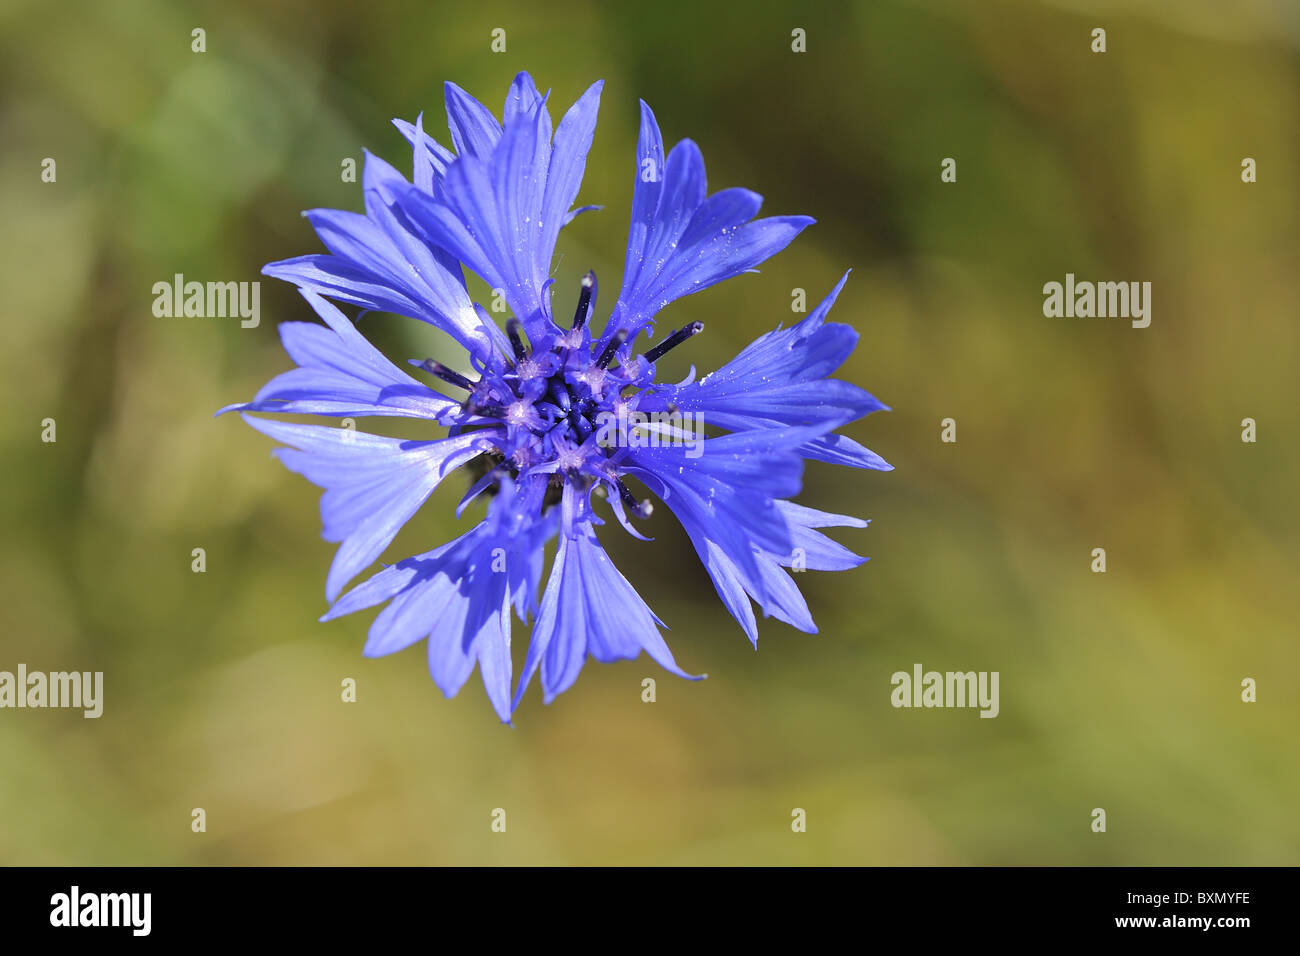 - Hurtsickle - Bleue bleuet (Centaurea cyanus) floraison dans un champ - détail d'une fleur - Cévennes - France Banque D'Images